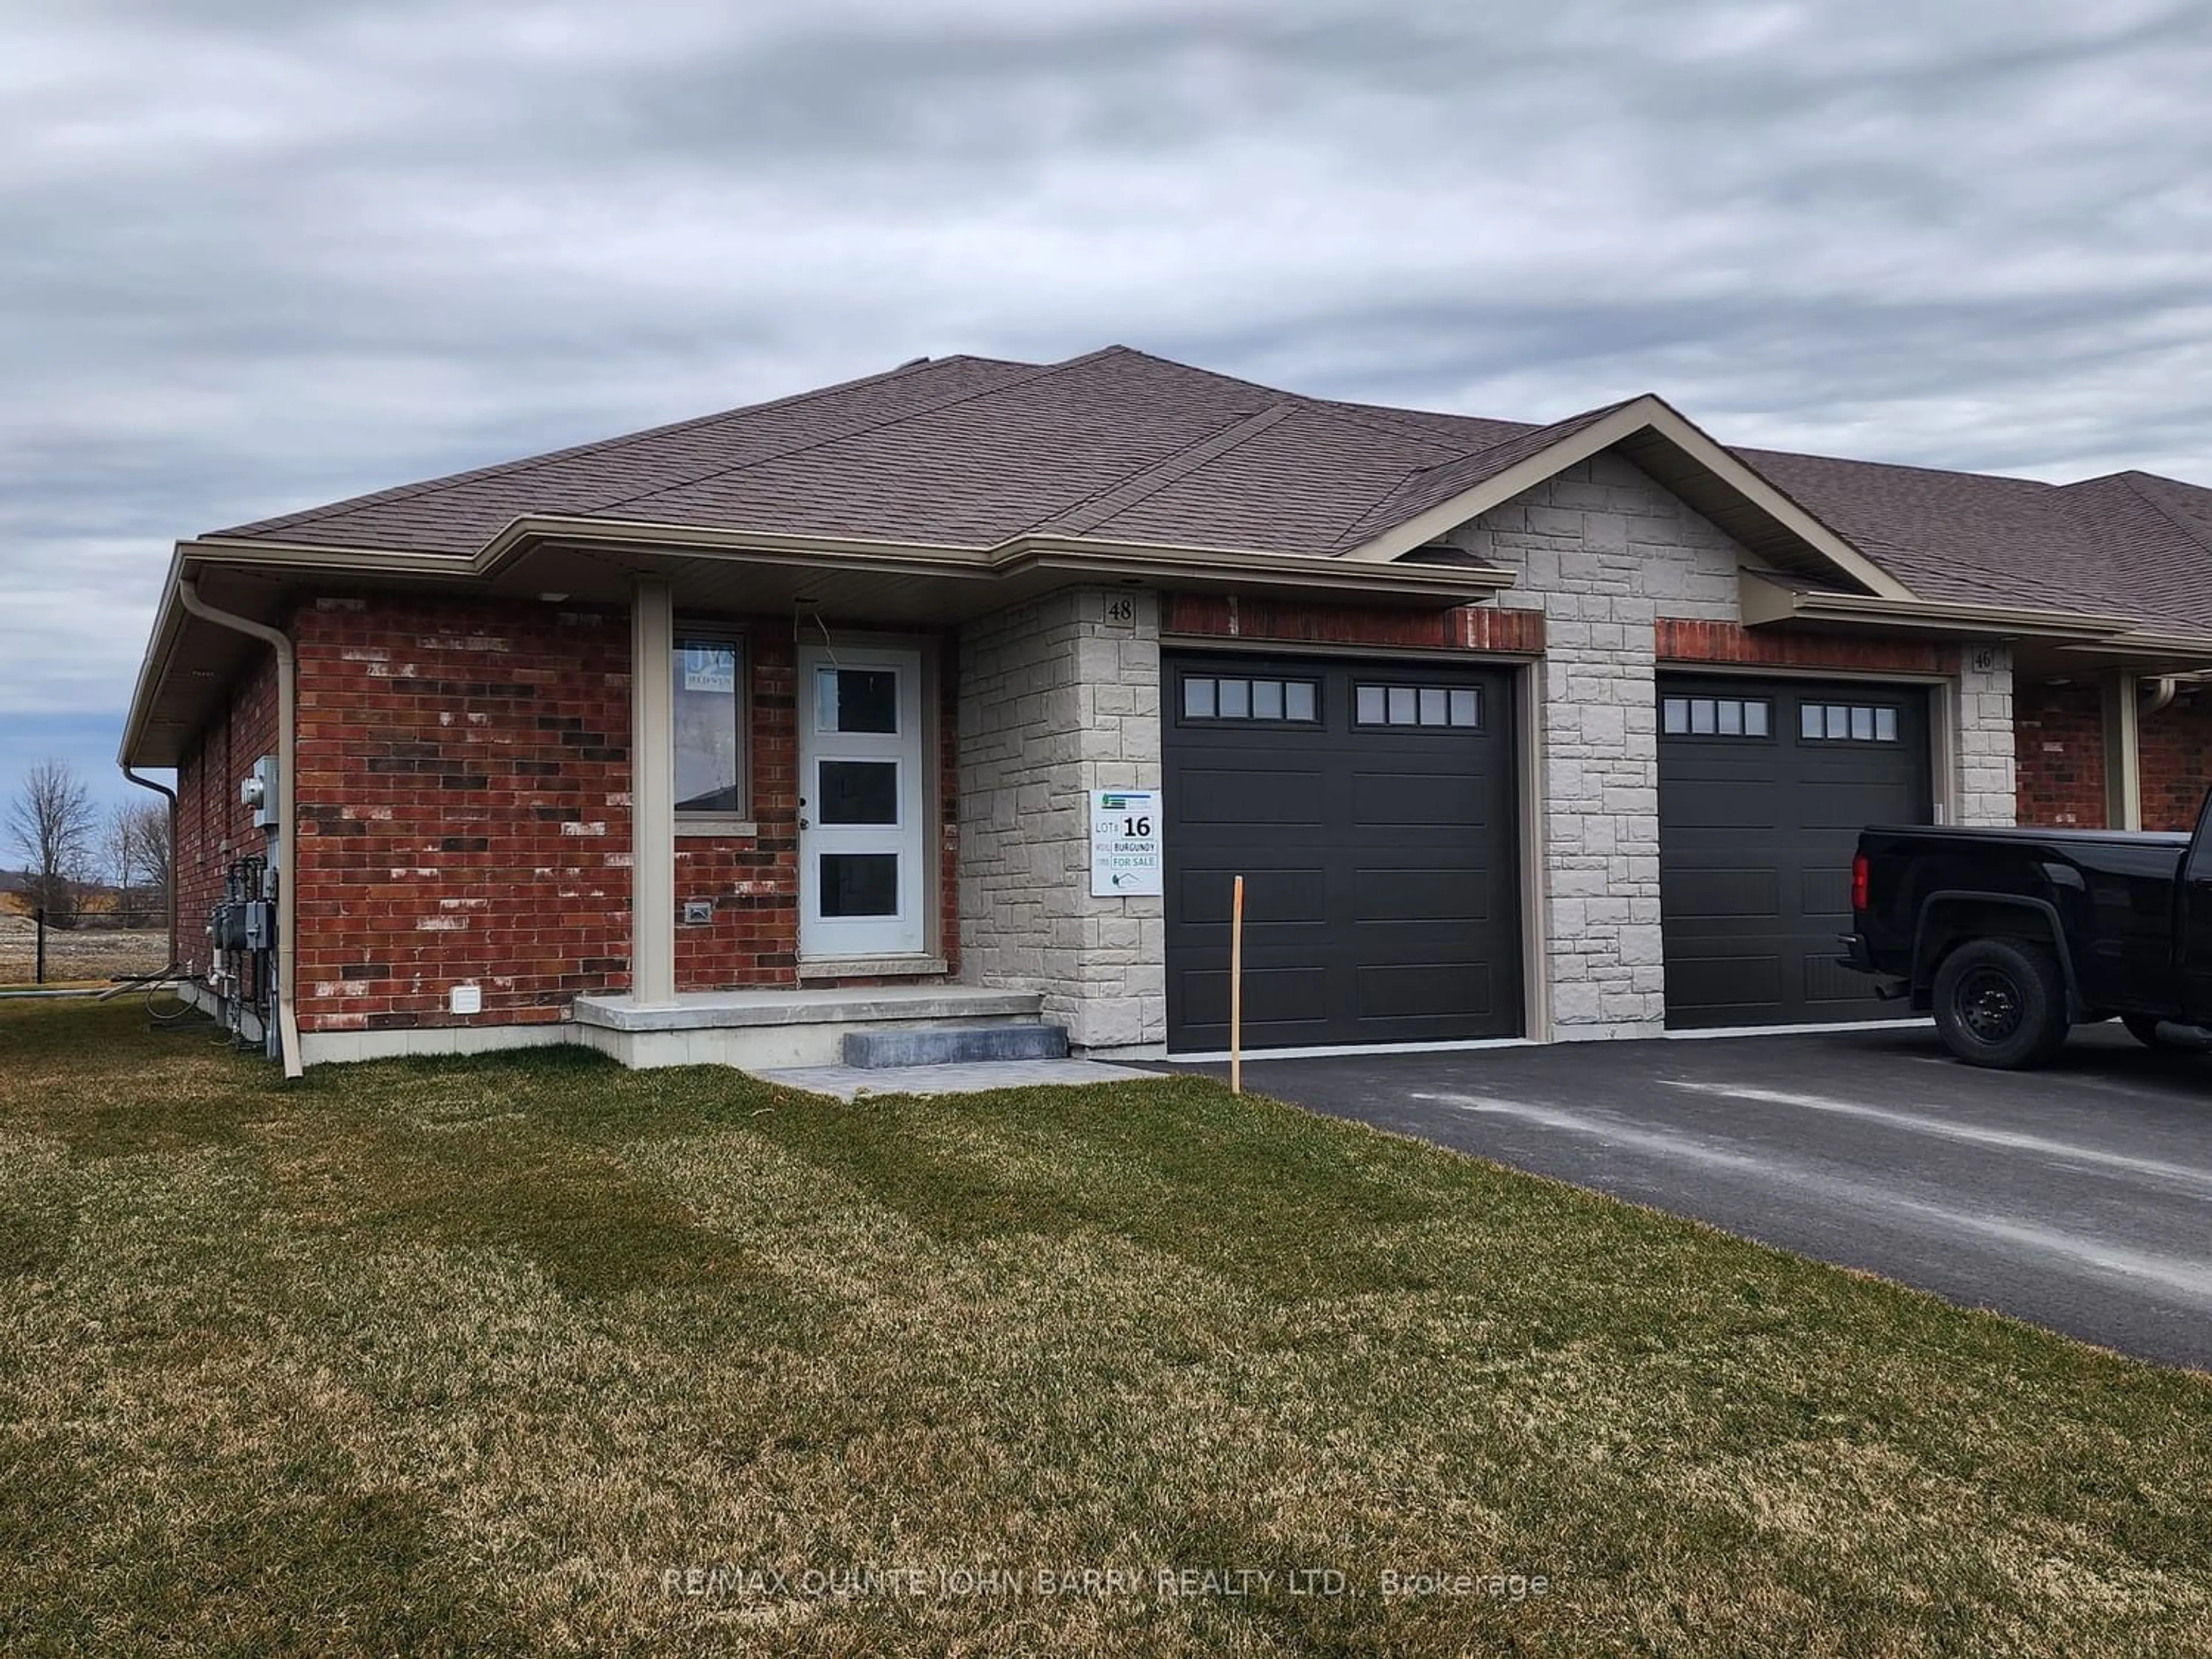 Home with brick exterior material for 48 Cedar Park Cres #Lot 16, Quinte West Ontario K8V 0J2